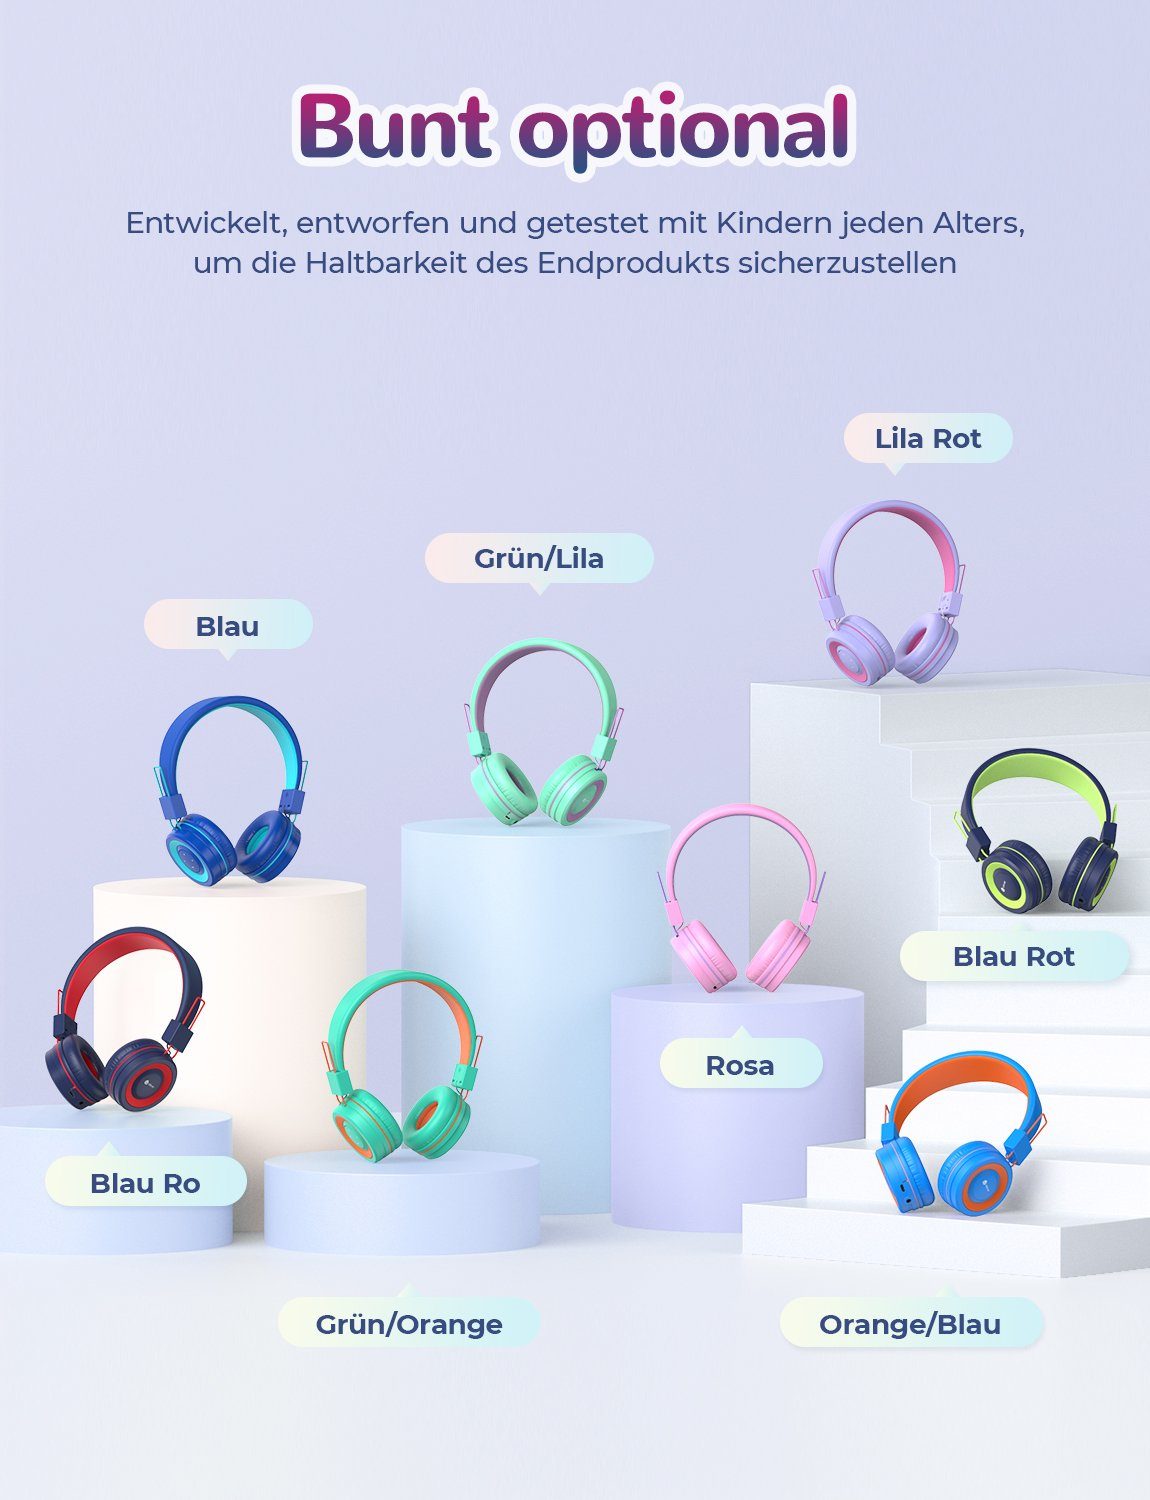 Stirnband, Kopfhörer rot lila mit am iclever Kinder für Ohr (Bluetooth, Verstellbares Schule) für Kinderkopfhörer Faltbar, BTH02 MIC On-Ear-Kopfhörer